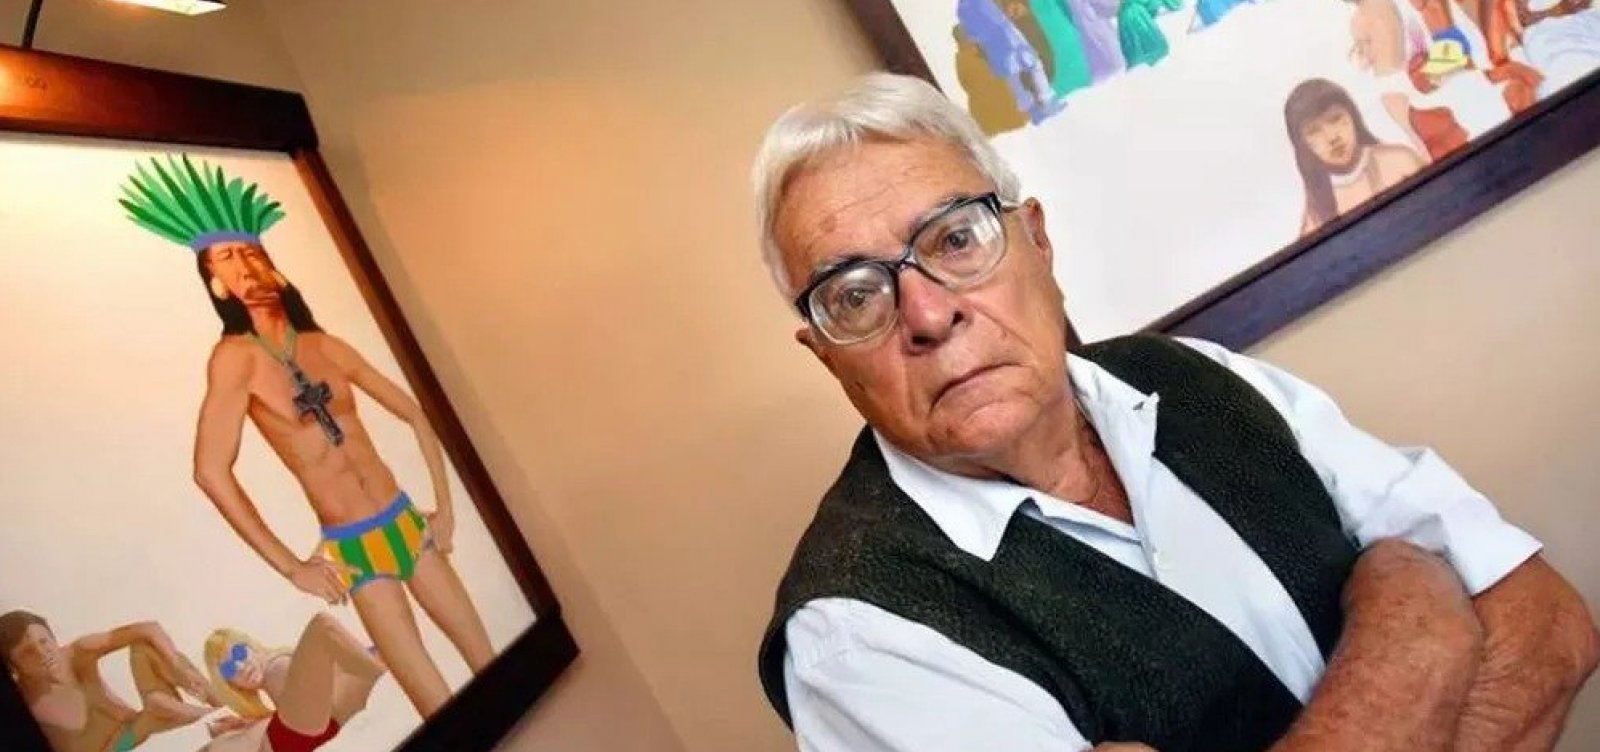 Morre o maior colecionador de arte do Brasil, Gilberto Chateaubriand